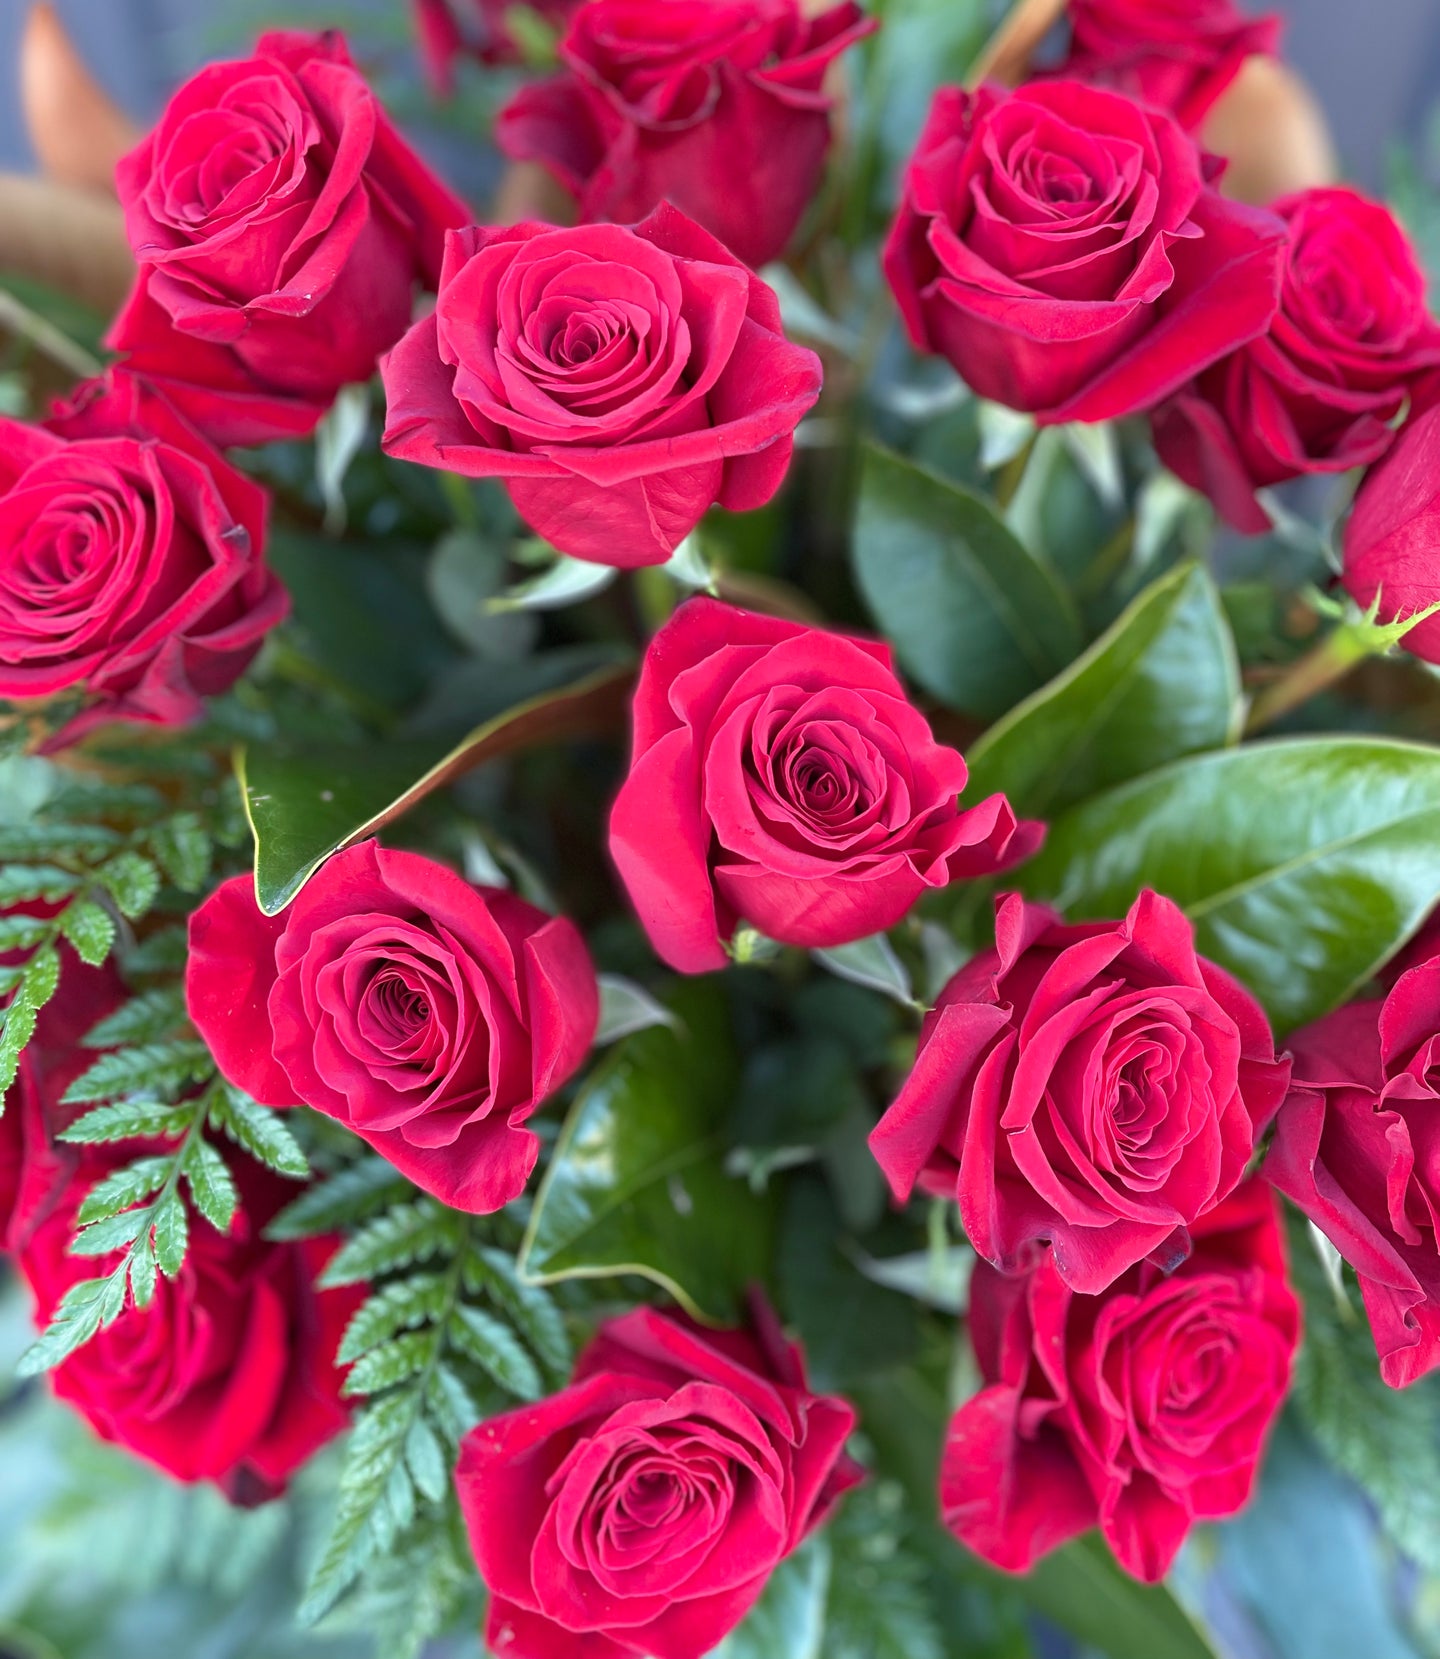 21 Long Stem Roses In Vase